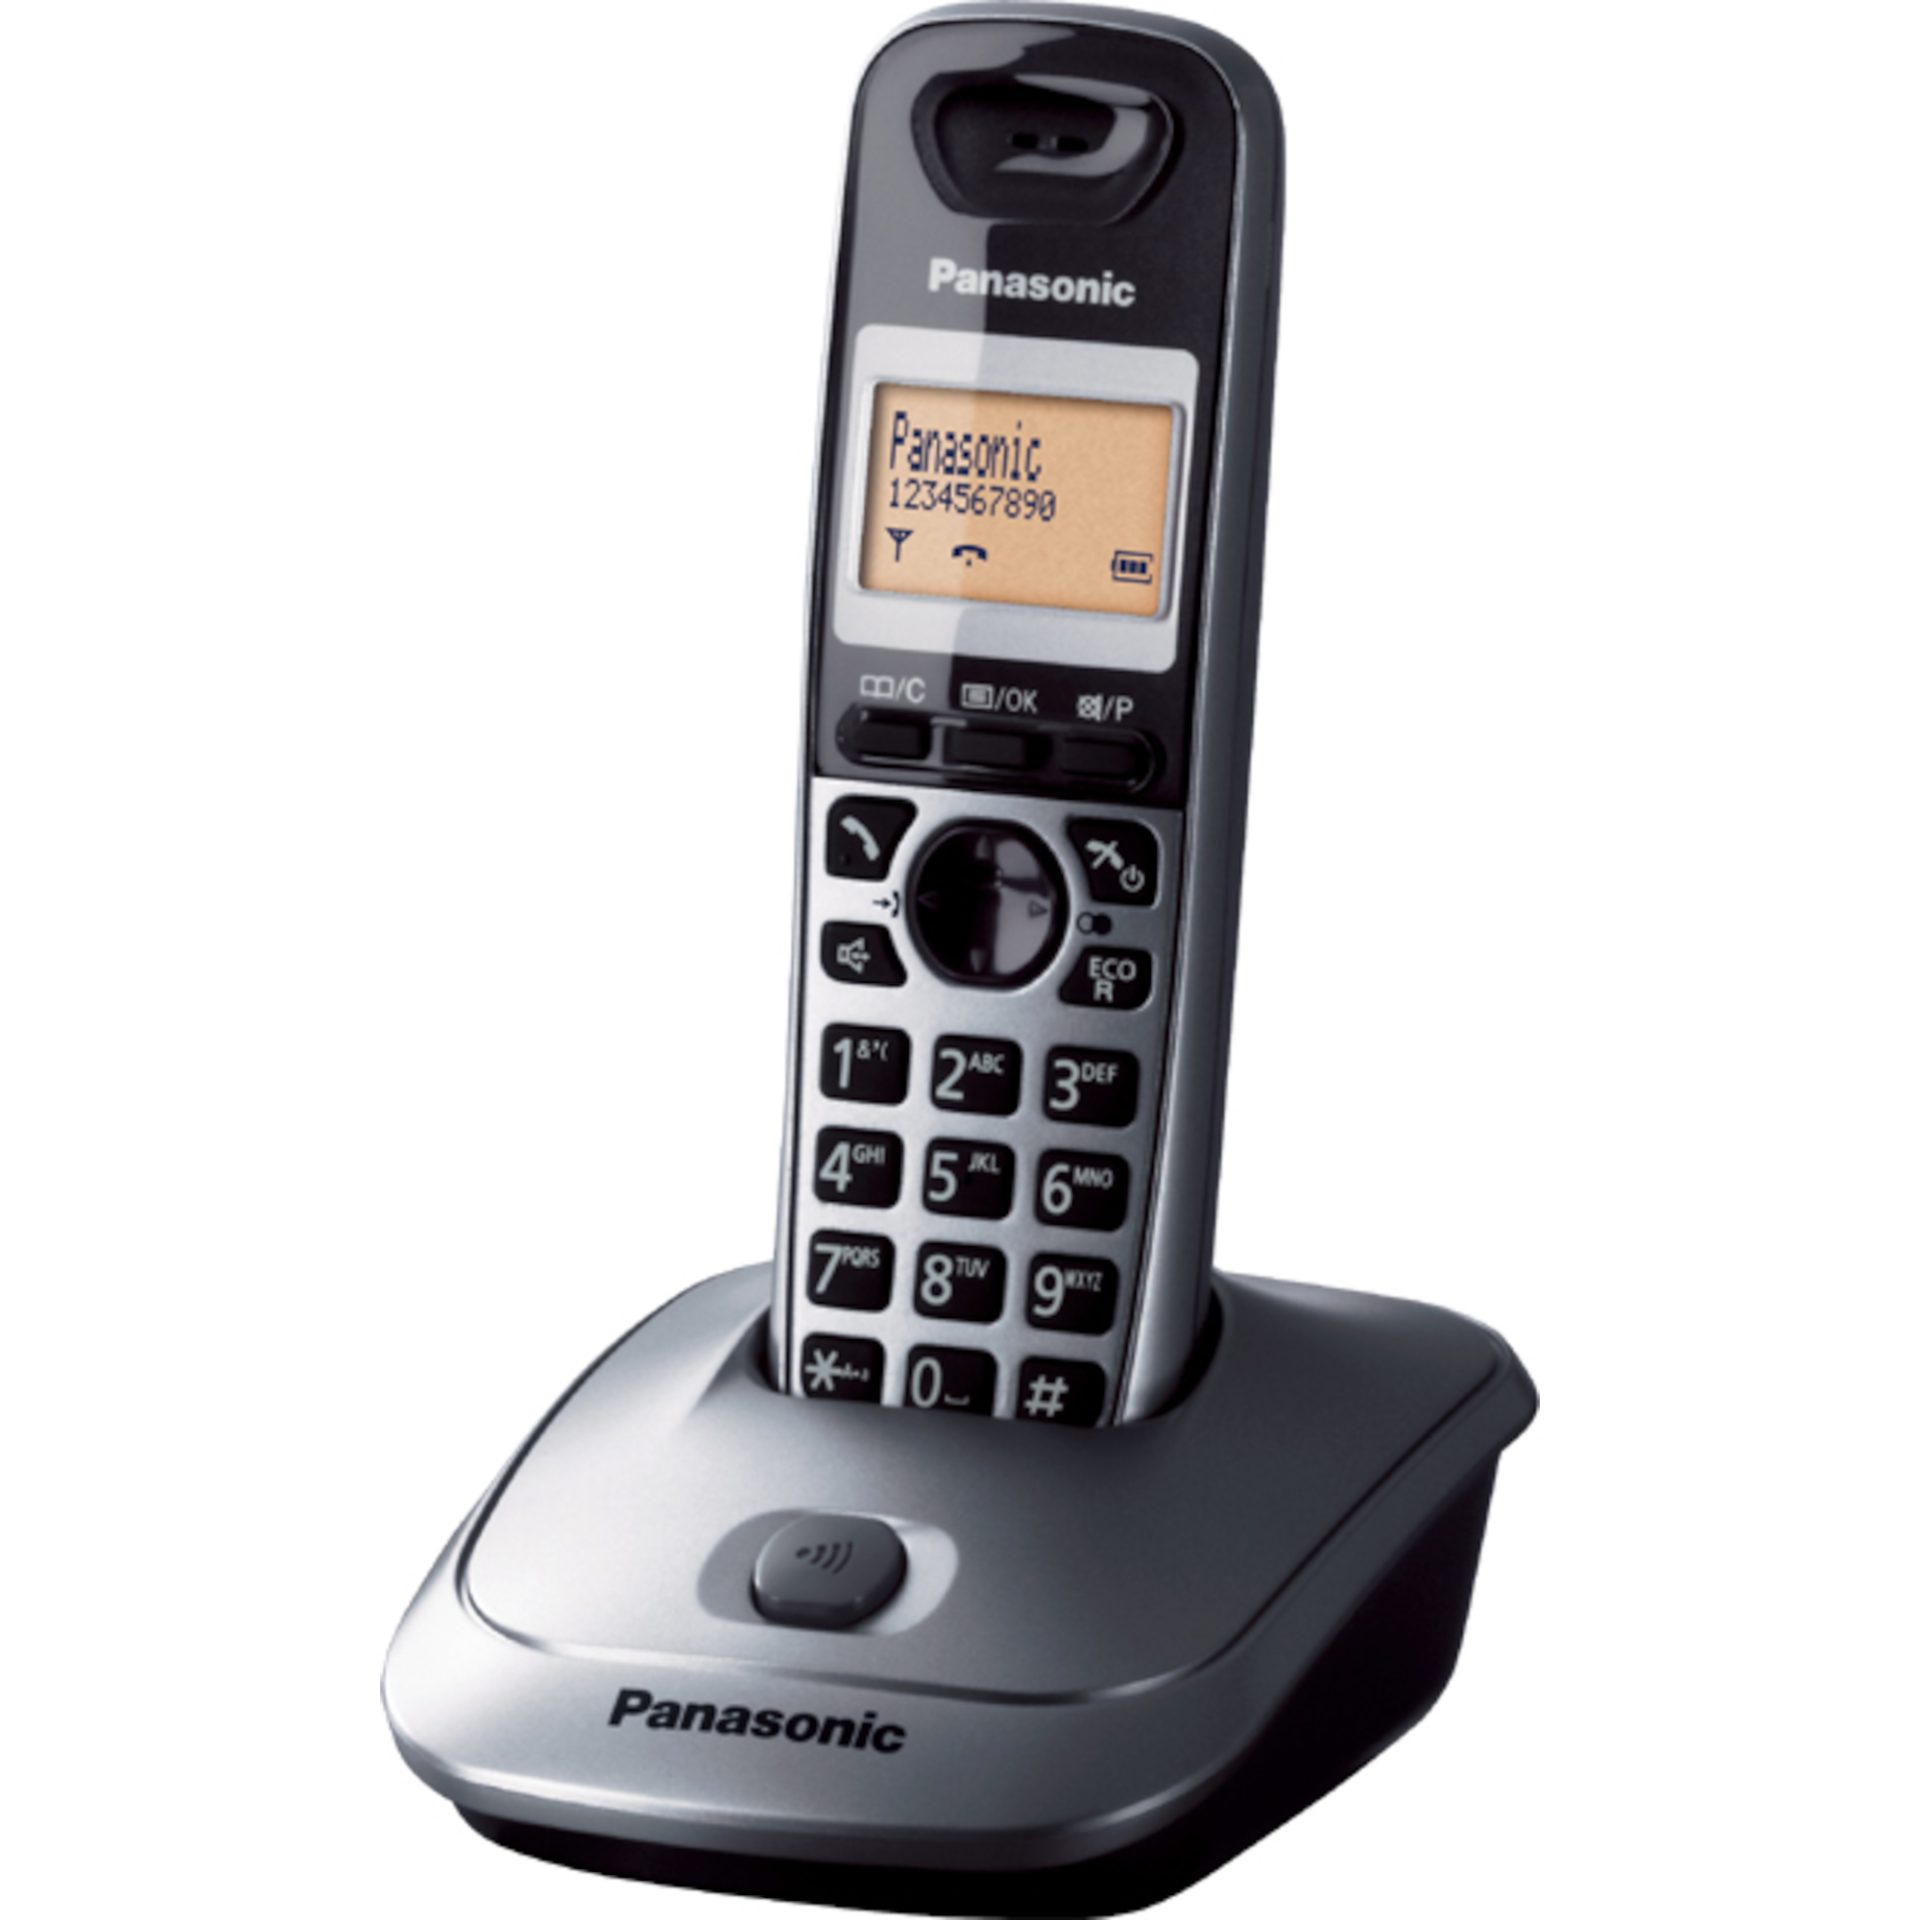 Panasonic KX-TG2511 DECT bezdrátový telefon (vysoce kvalitní hovor bez rušení, podsvícený 1,4palcový LCD displej, hands-free), šedo-černý